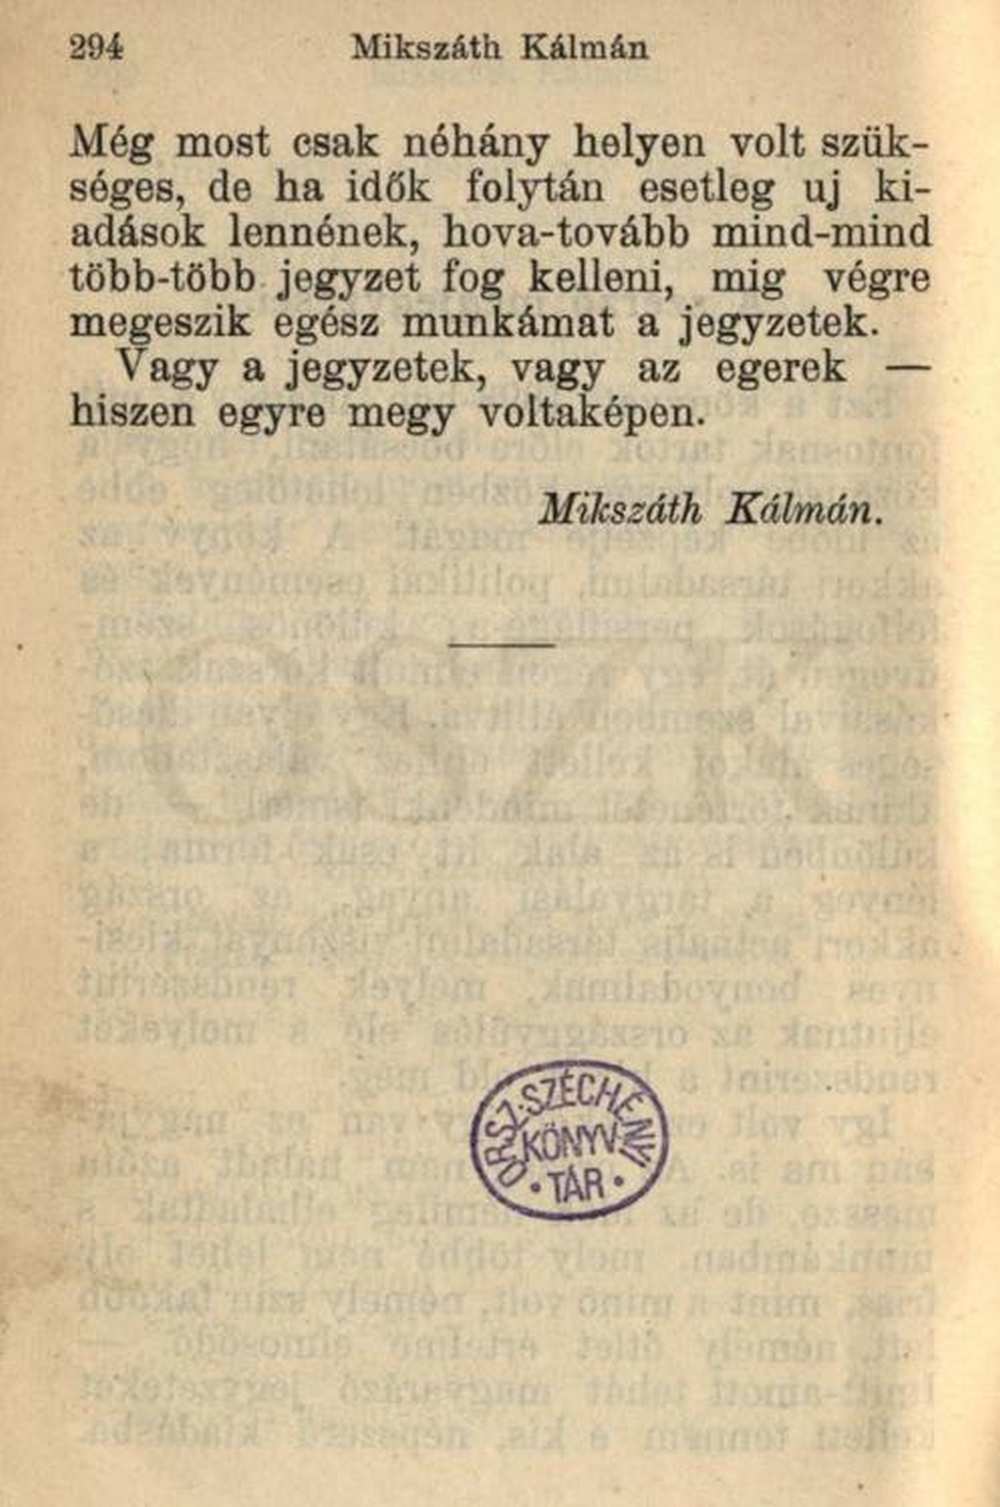 A szerző megjegyzései. In: Mikszáth Kálmán: Az új Zrínyiász, Budapest, Lampel, 1898, 294. – Magyar Elektronikus Könyvtár https://mek.oszk.hu/16000/16004/16004.pdf